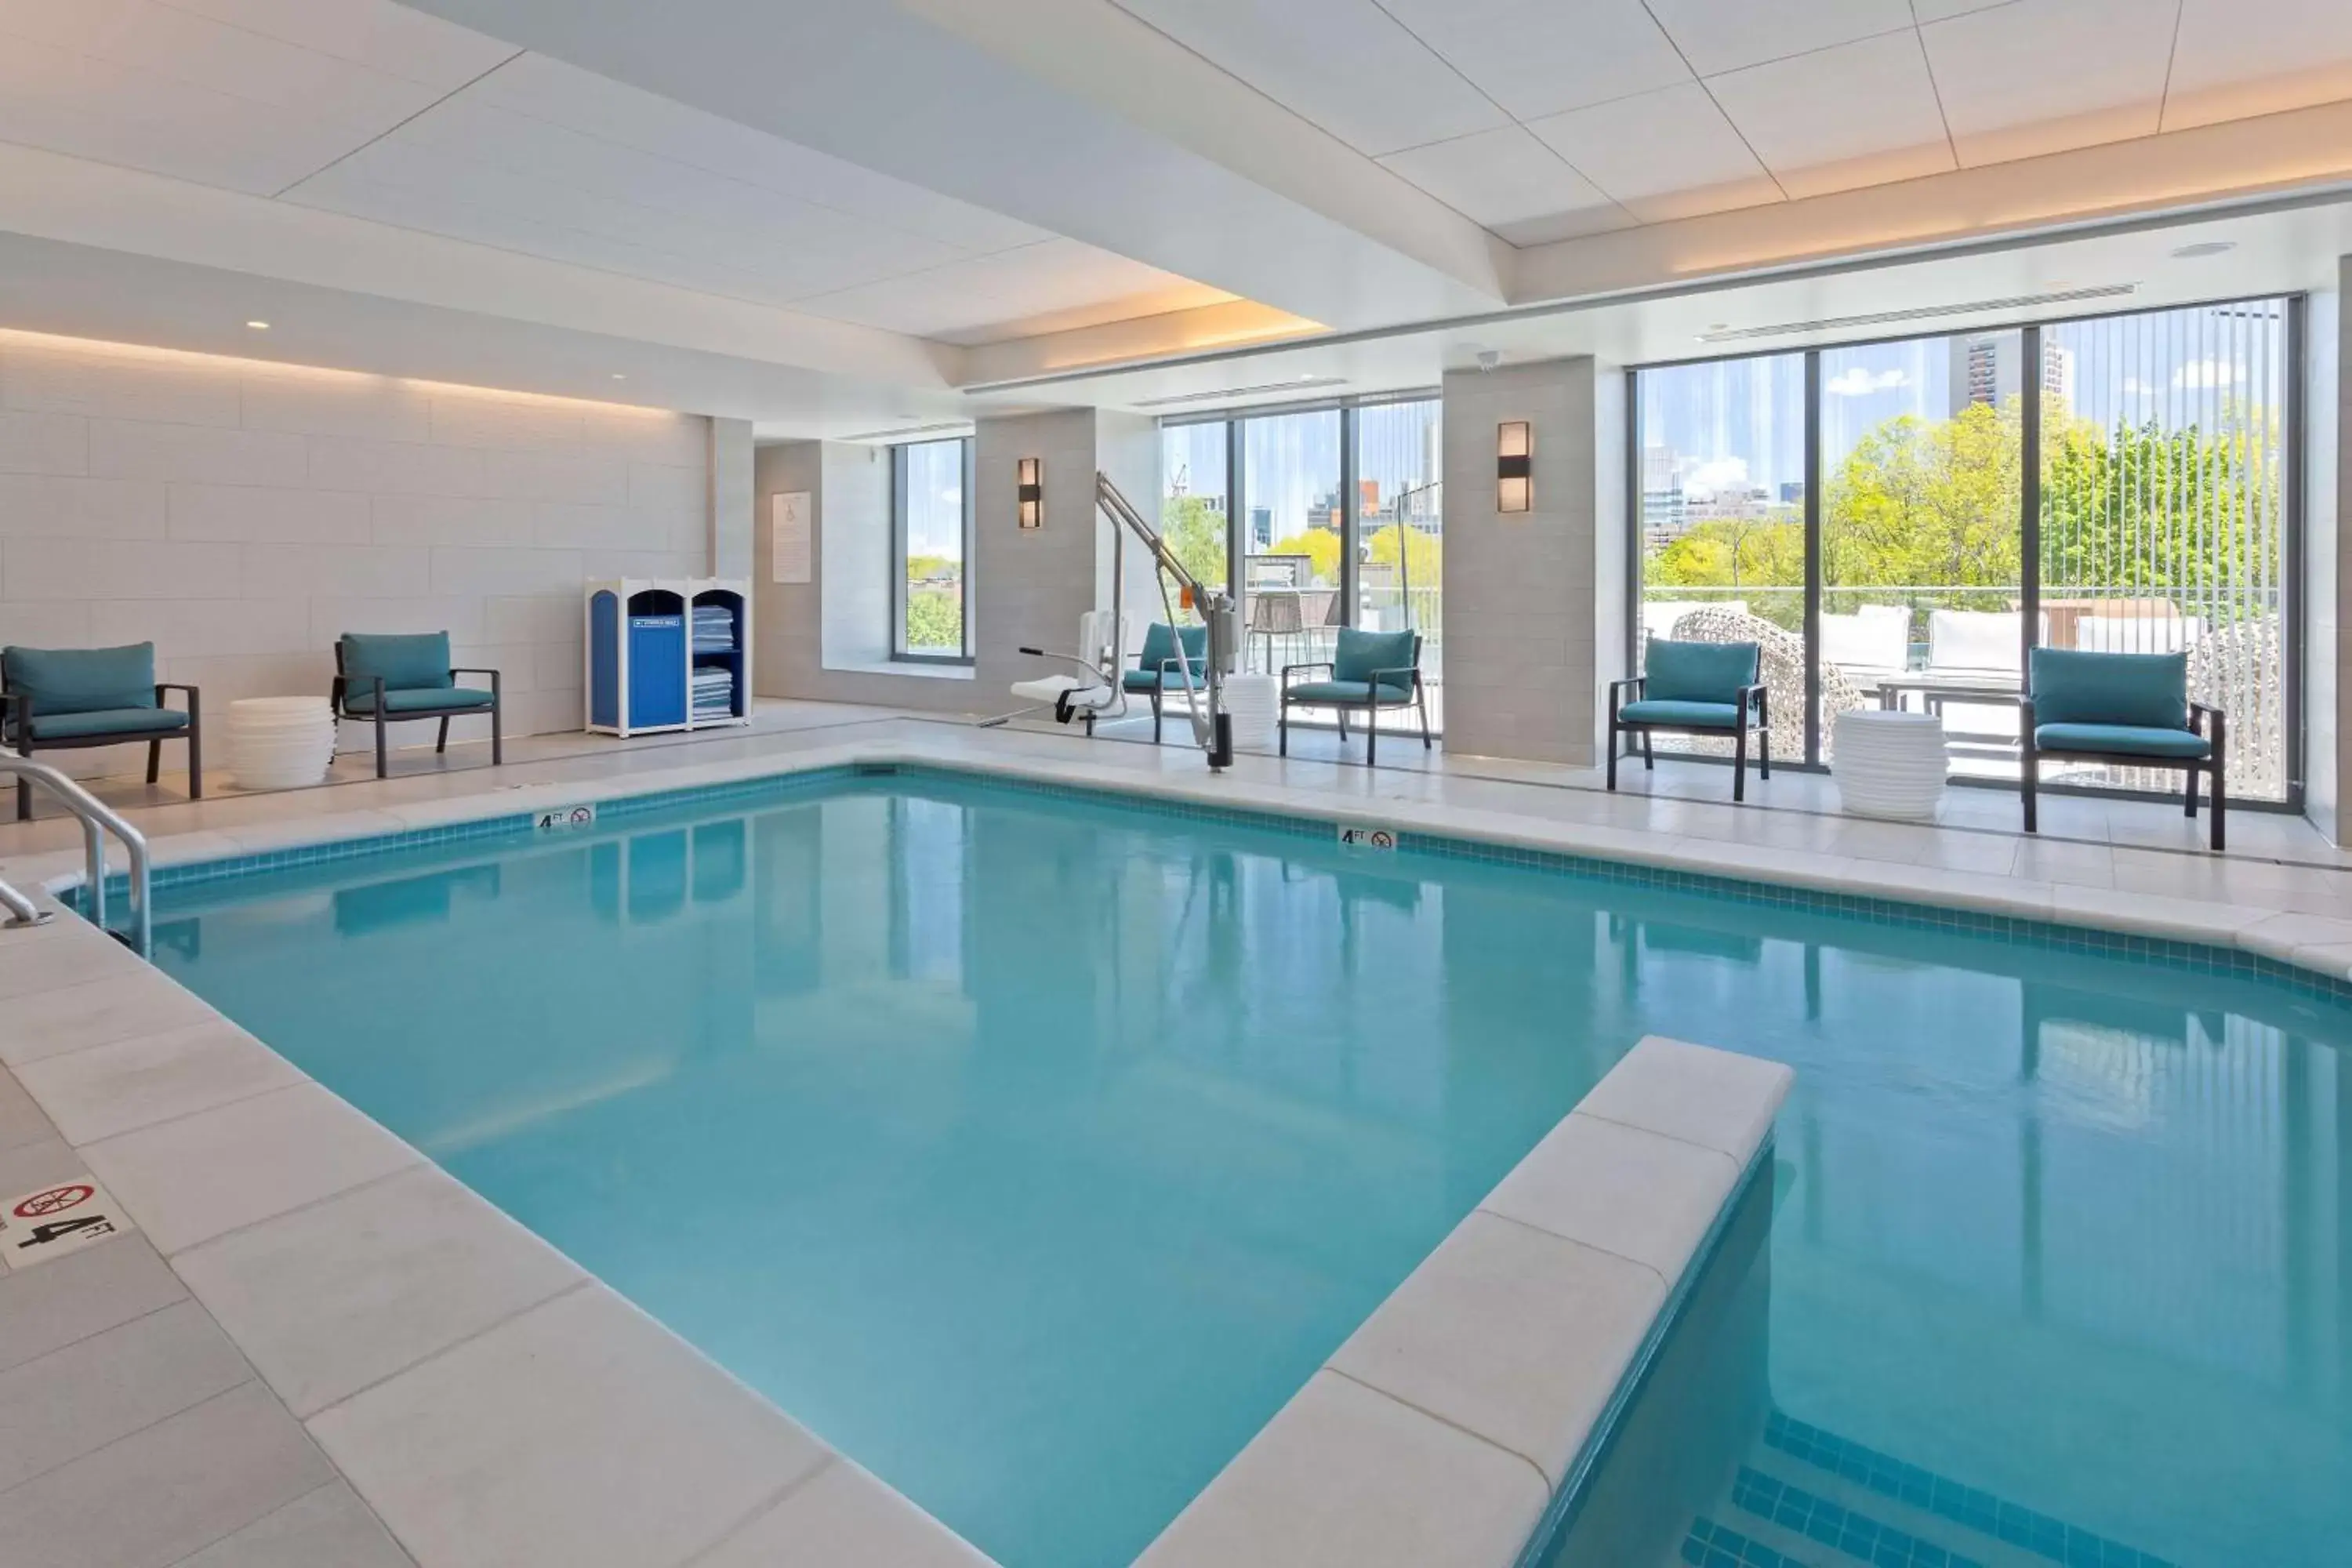 Pool view, Swimming Pool in Hilton Garden Inn Boston Brookline, Ma